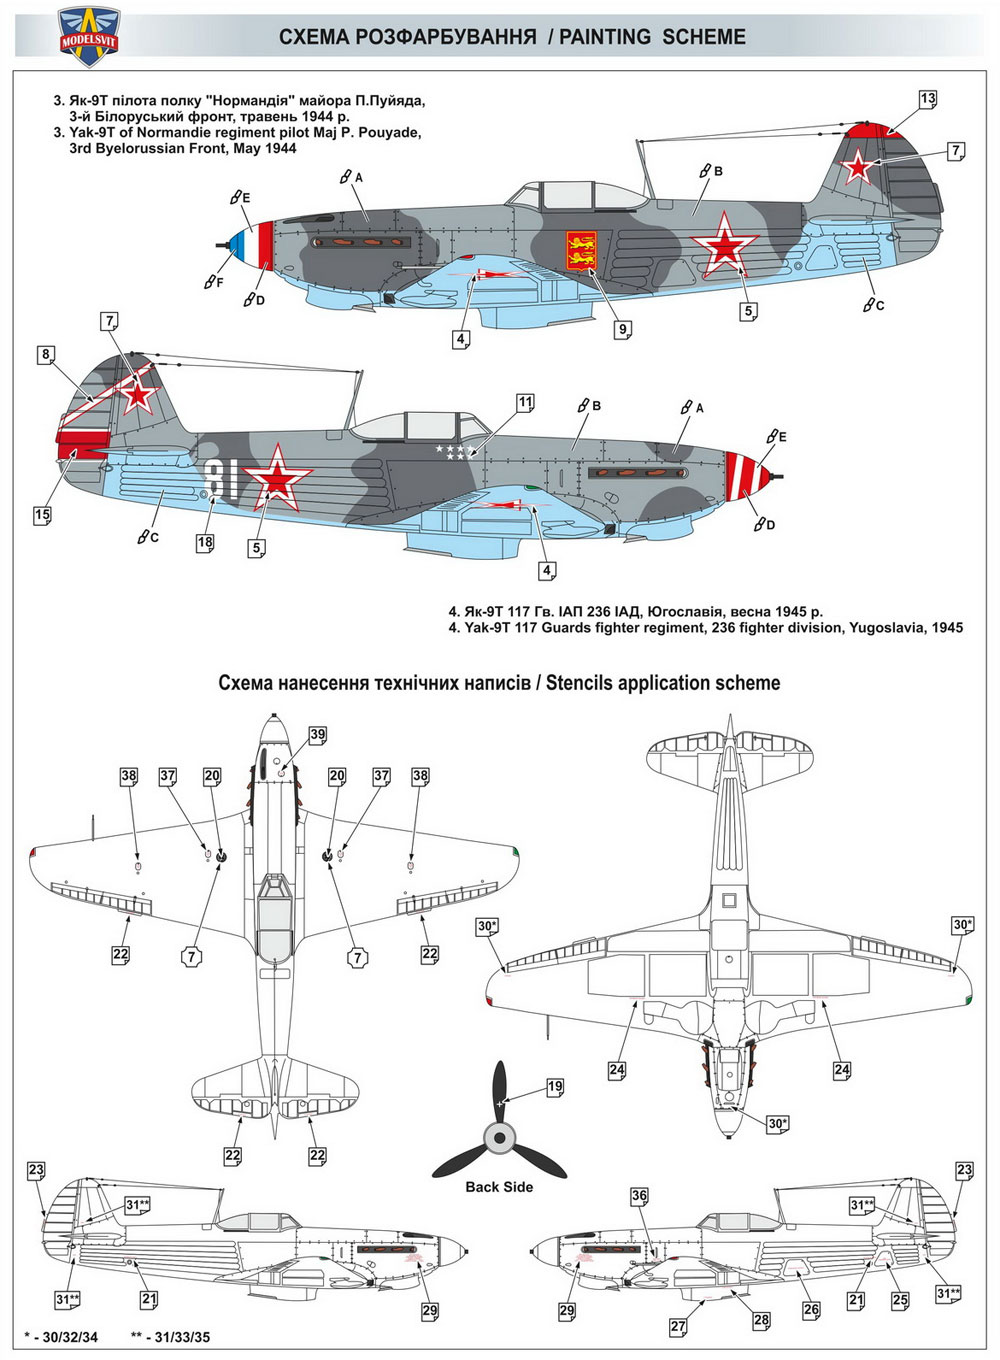 Yak-9T プラモデル (モデルズビット 1/48 エアクラフト プラモデル No.4807) 商品画像_2